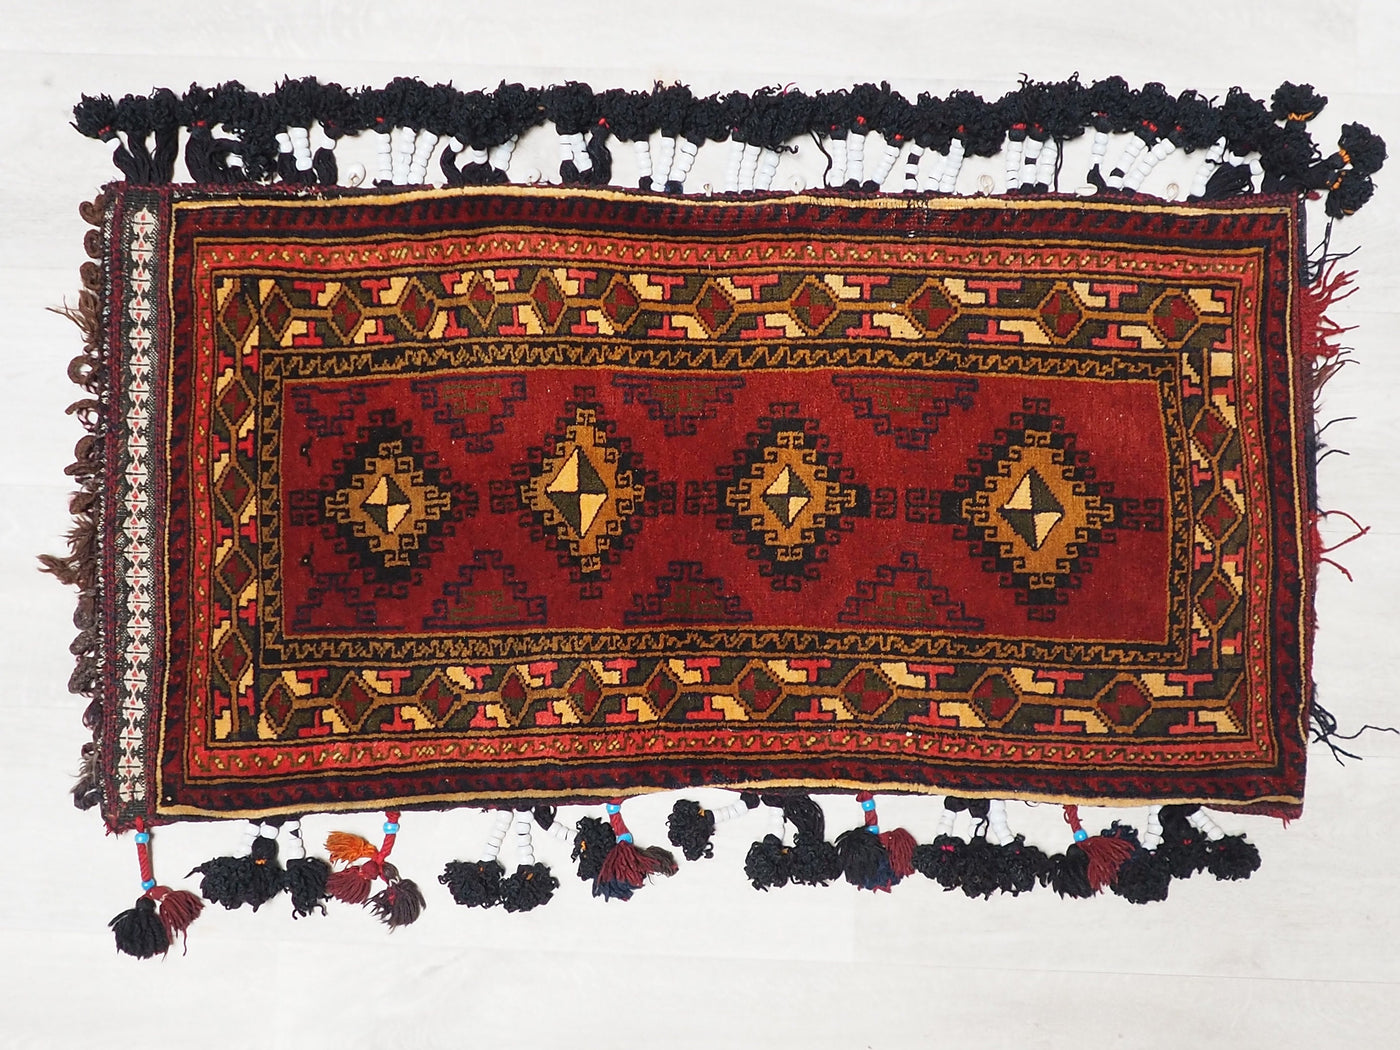 108x54 cm antik orient Afghan belochi Teppich nomaden sitzkissen bodenkissen  Bohemian cushion 1001-nacht Nr.22/3  Orientsbazar   